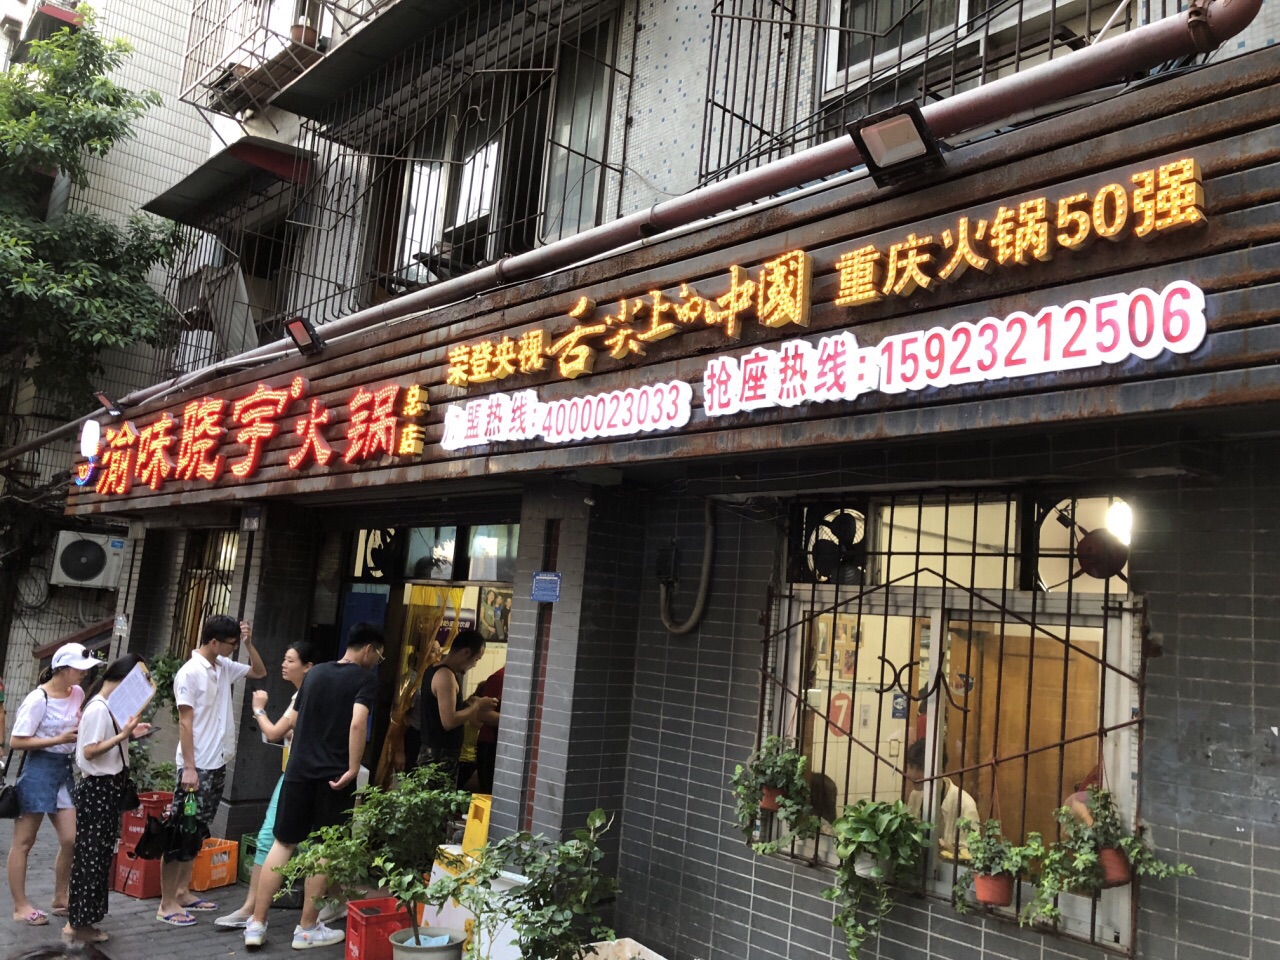 2023渝味晓宇火锅(枇杷山正街店)美食餐厅,只有火锅高温消毒的才敢吃。...【去哪儿攻略】